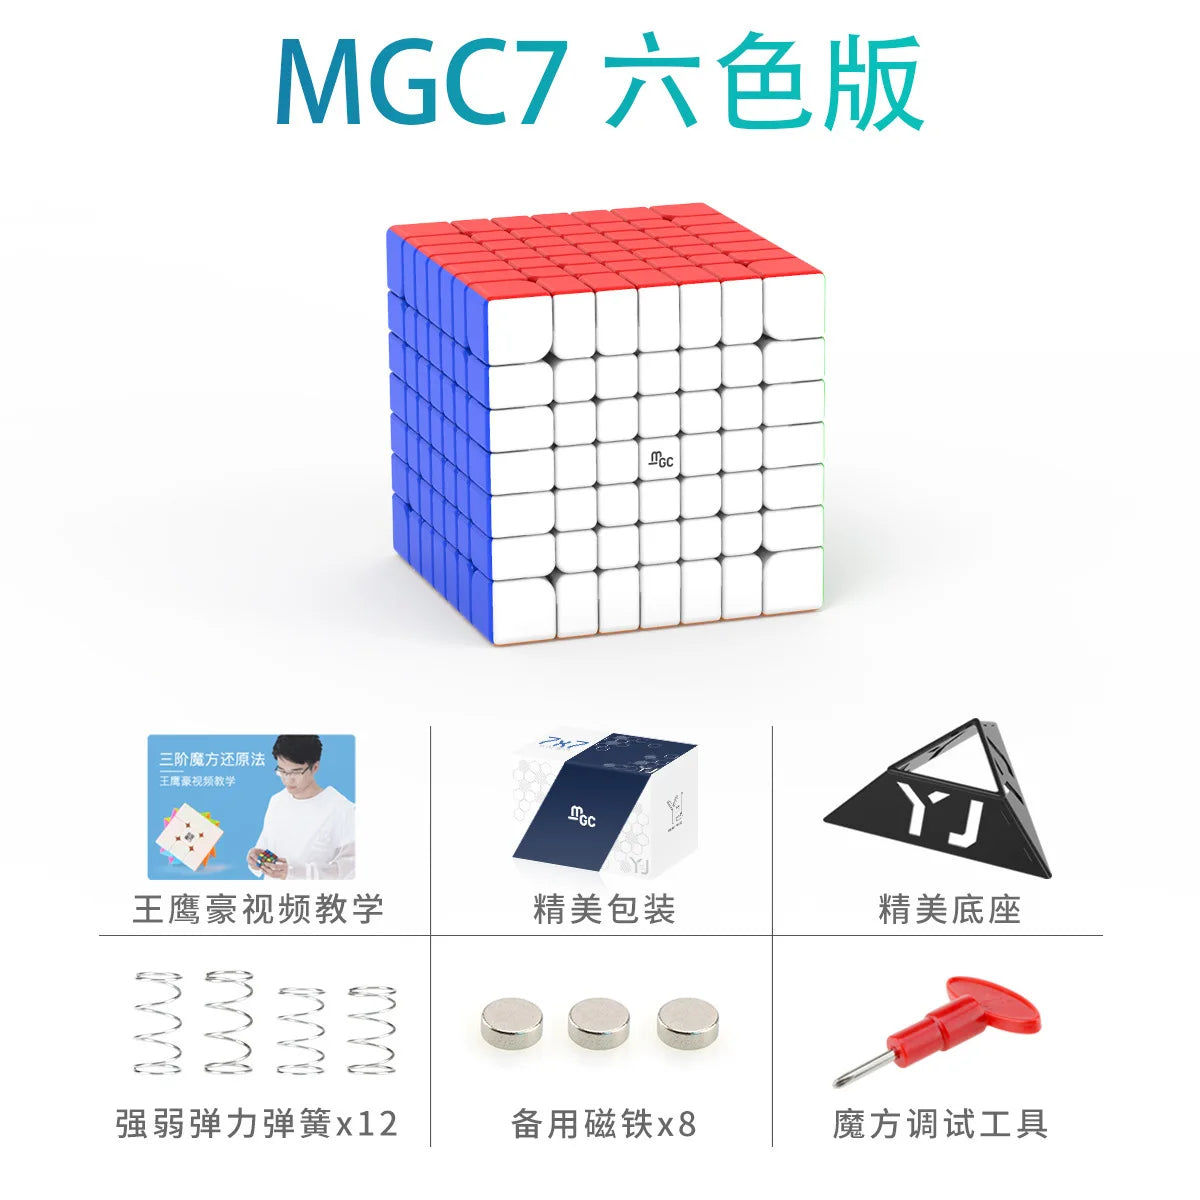 MGC 7x7 M Magnetic YJ